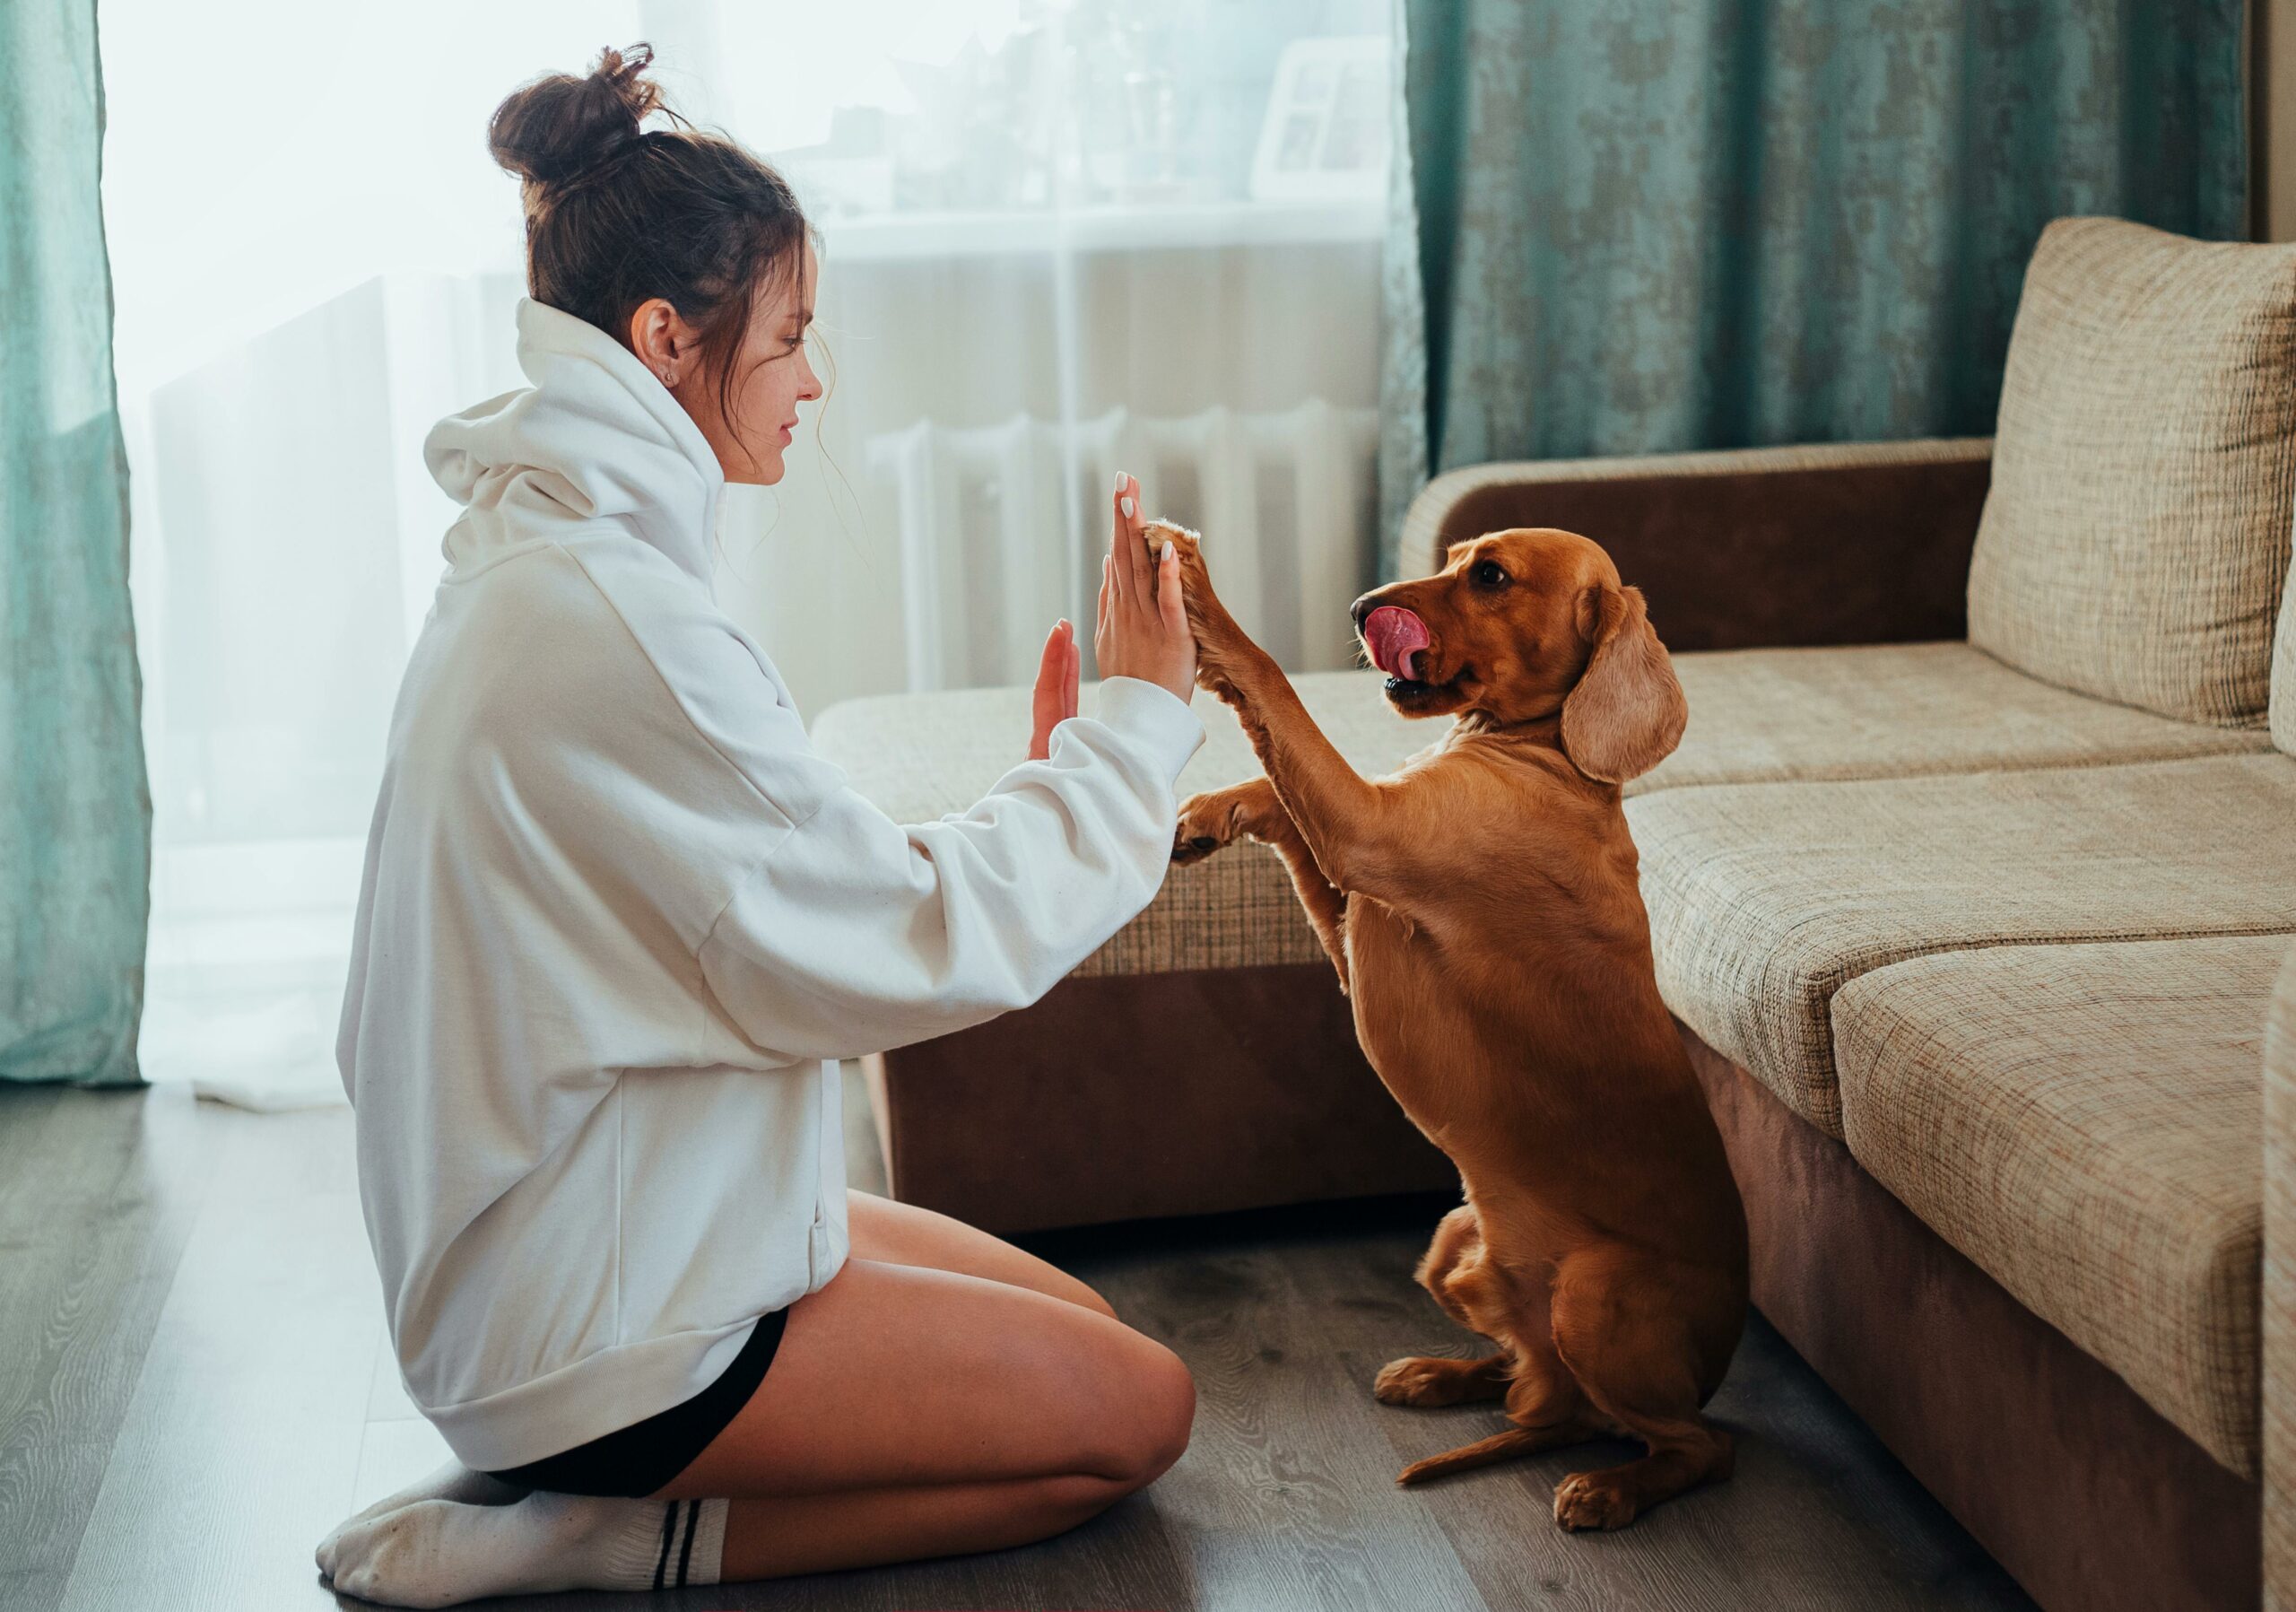 How Do I Teach My Dog Basic Obedience?